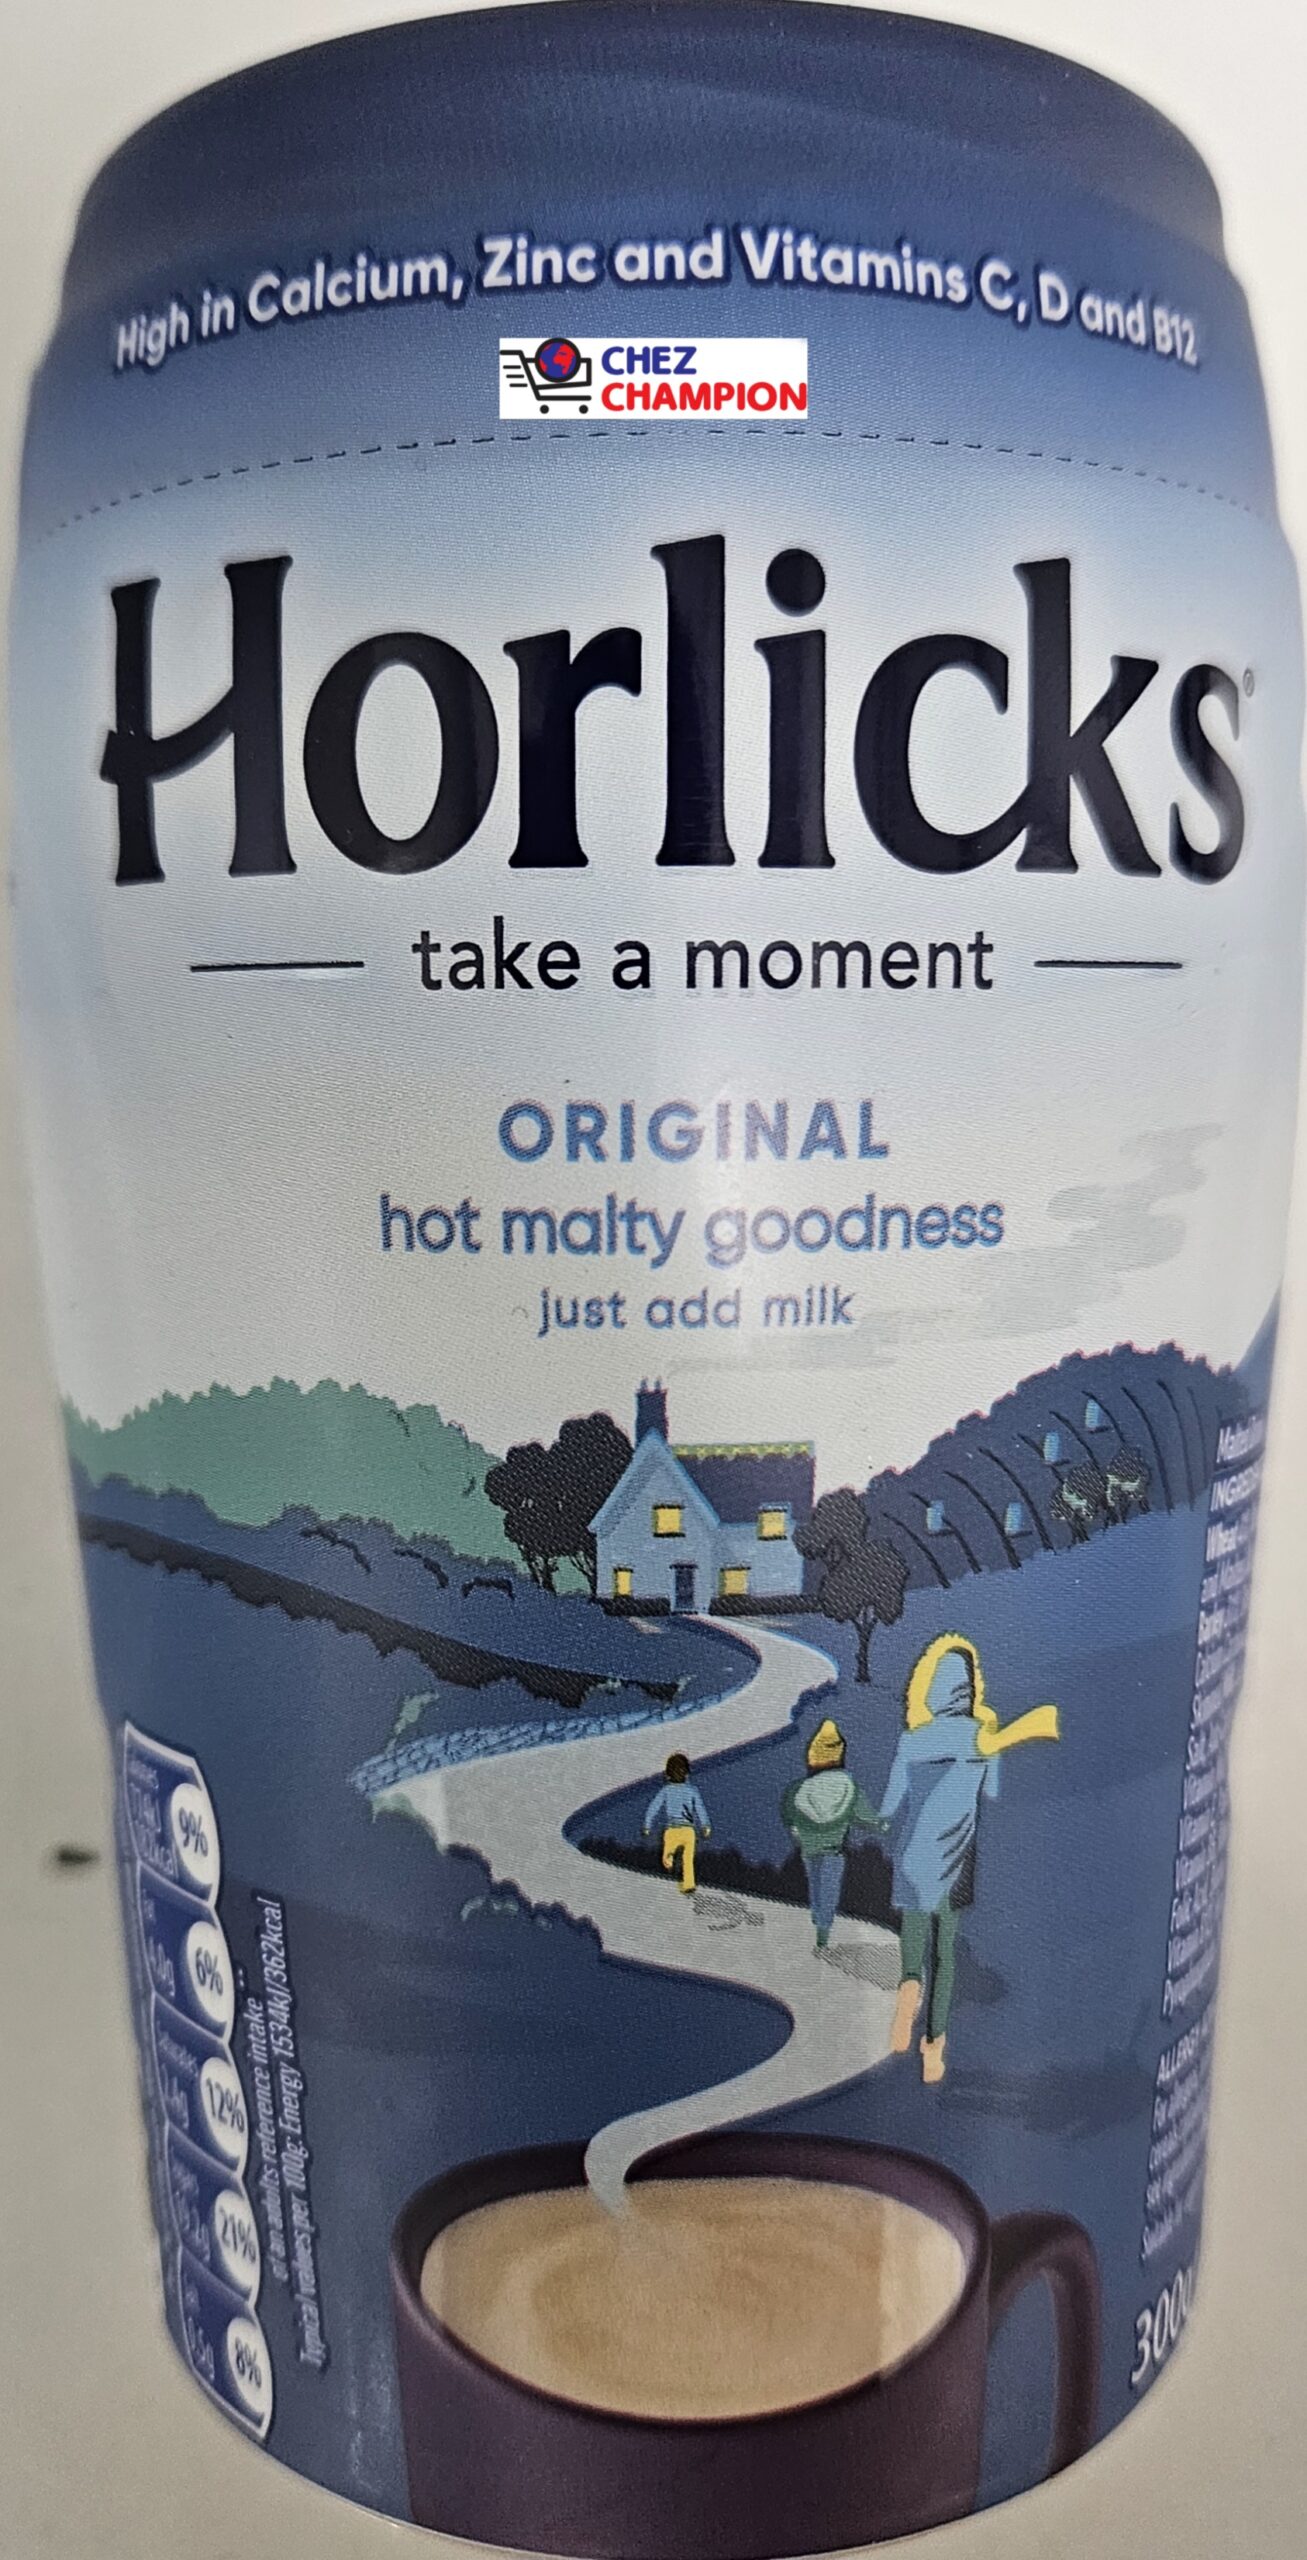 Horlicks original hot malty goodness just add milk – 300g